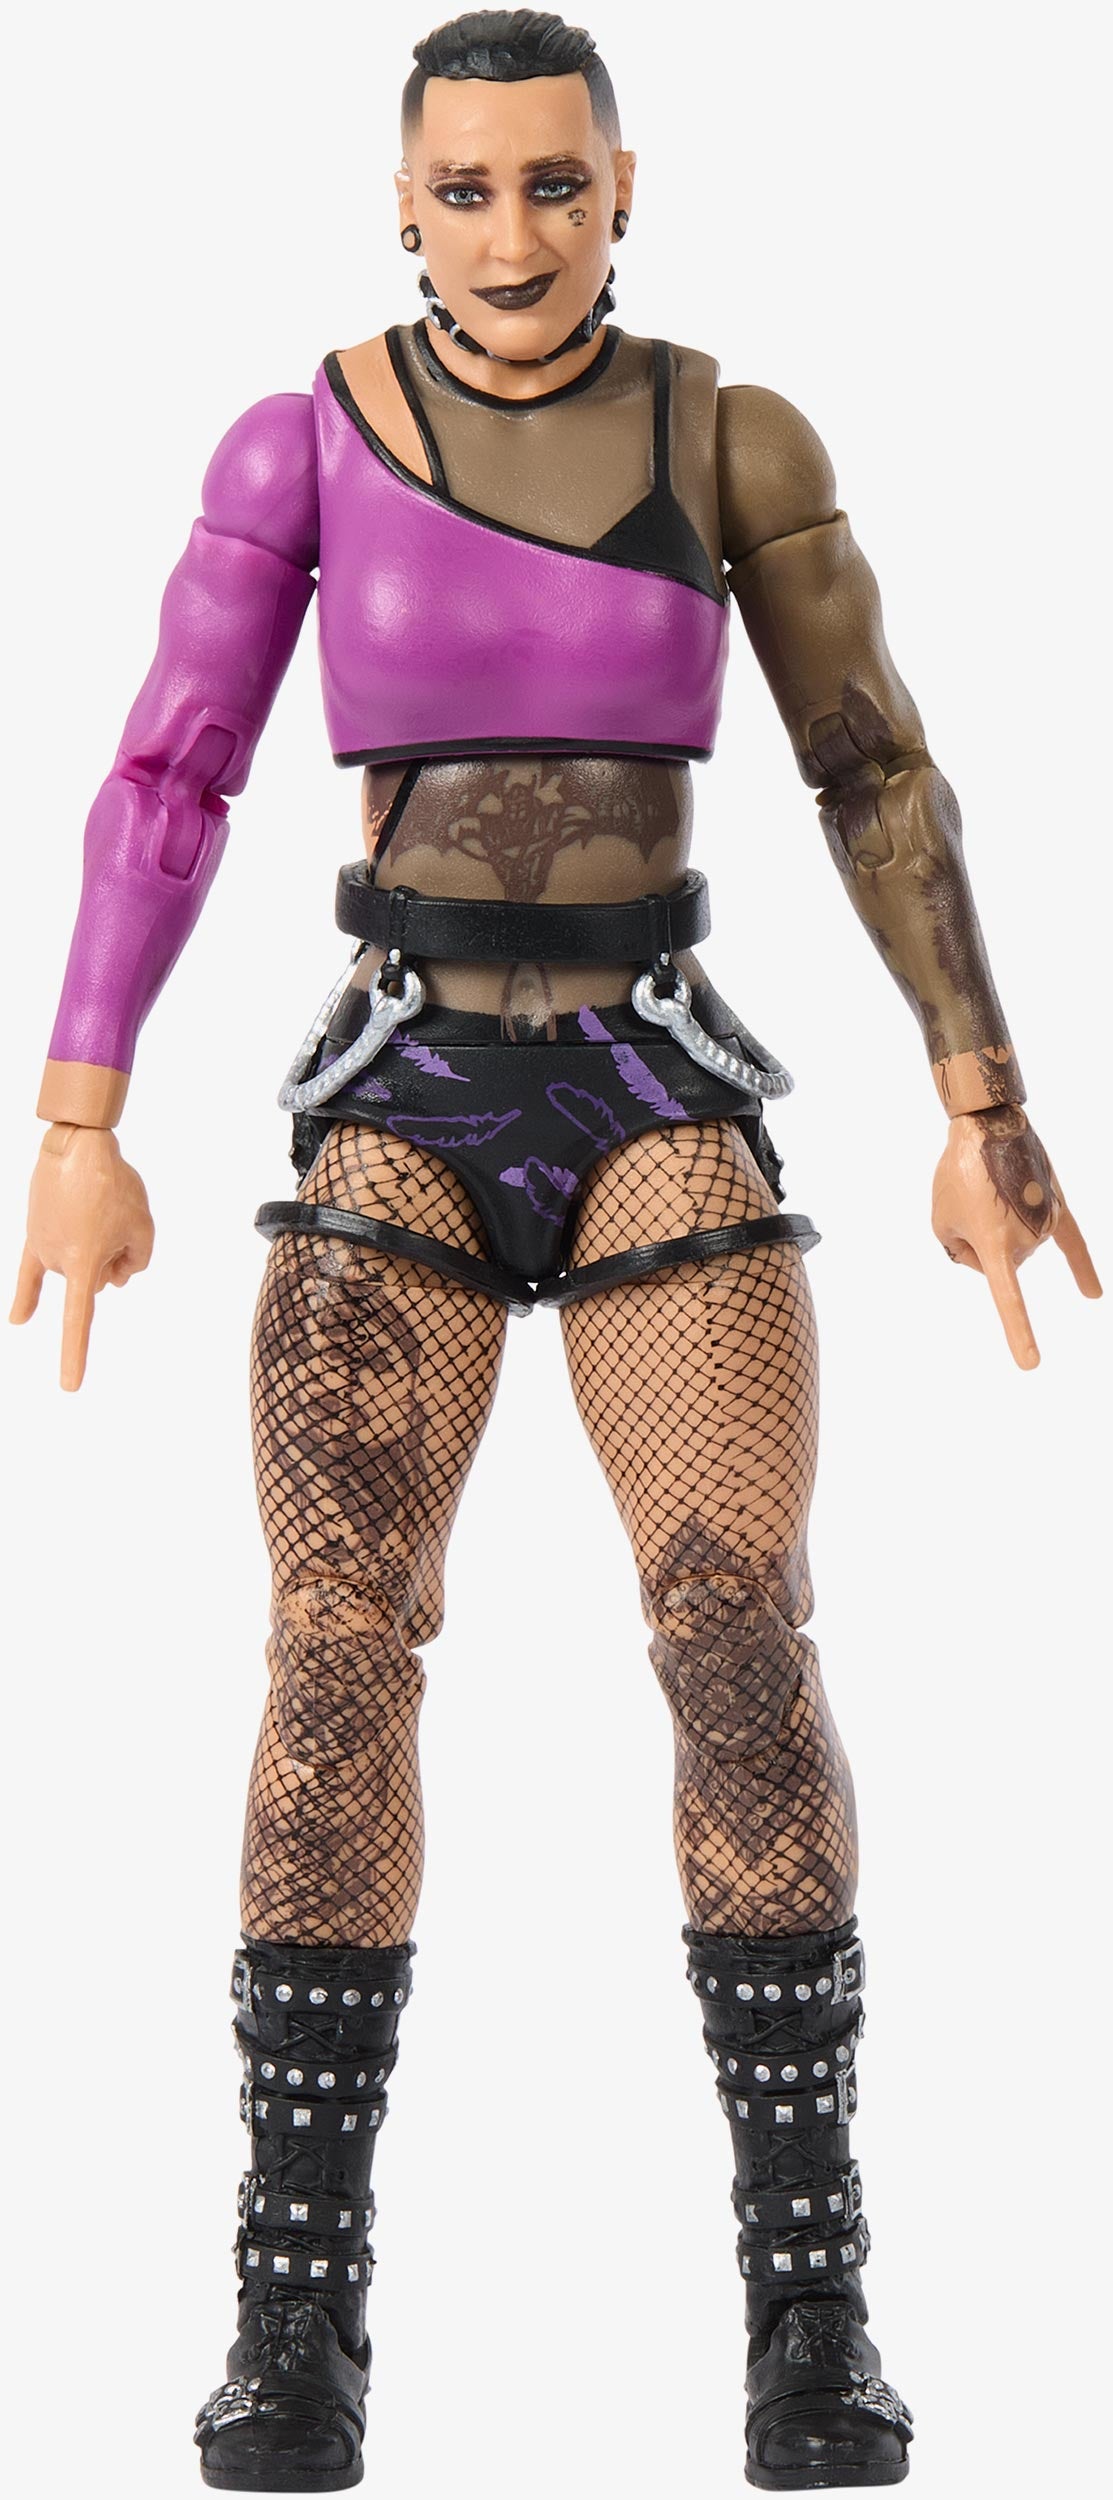 Rhea Ripley - WWE Elite 102 Mattel WWE Toy Wrestling Action Figure